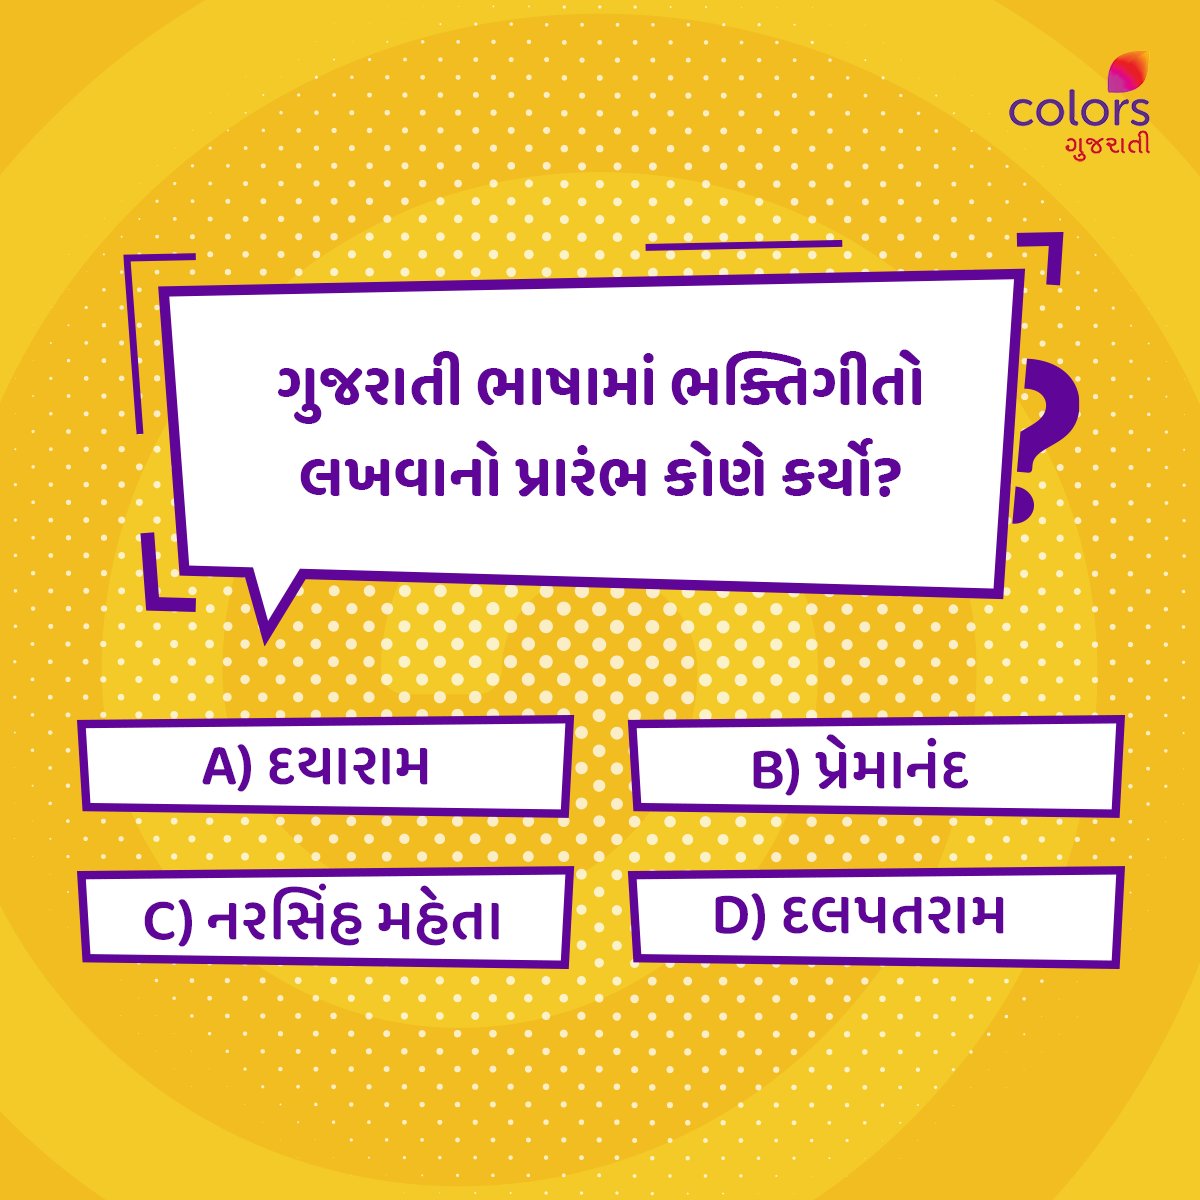 જો તમે પણ આ પ્રશ્નનો ઉત્તર જાણતા હોય તો Comment માં જણાવો...🤔

#Colorsgujarati #Gujarat #Quiz #bhakti #generalquiz